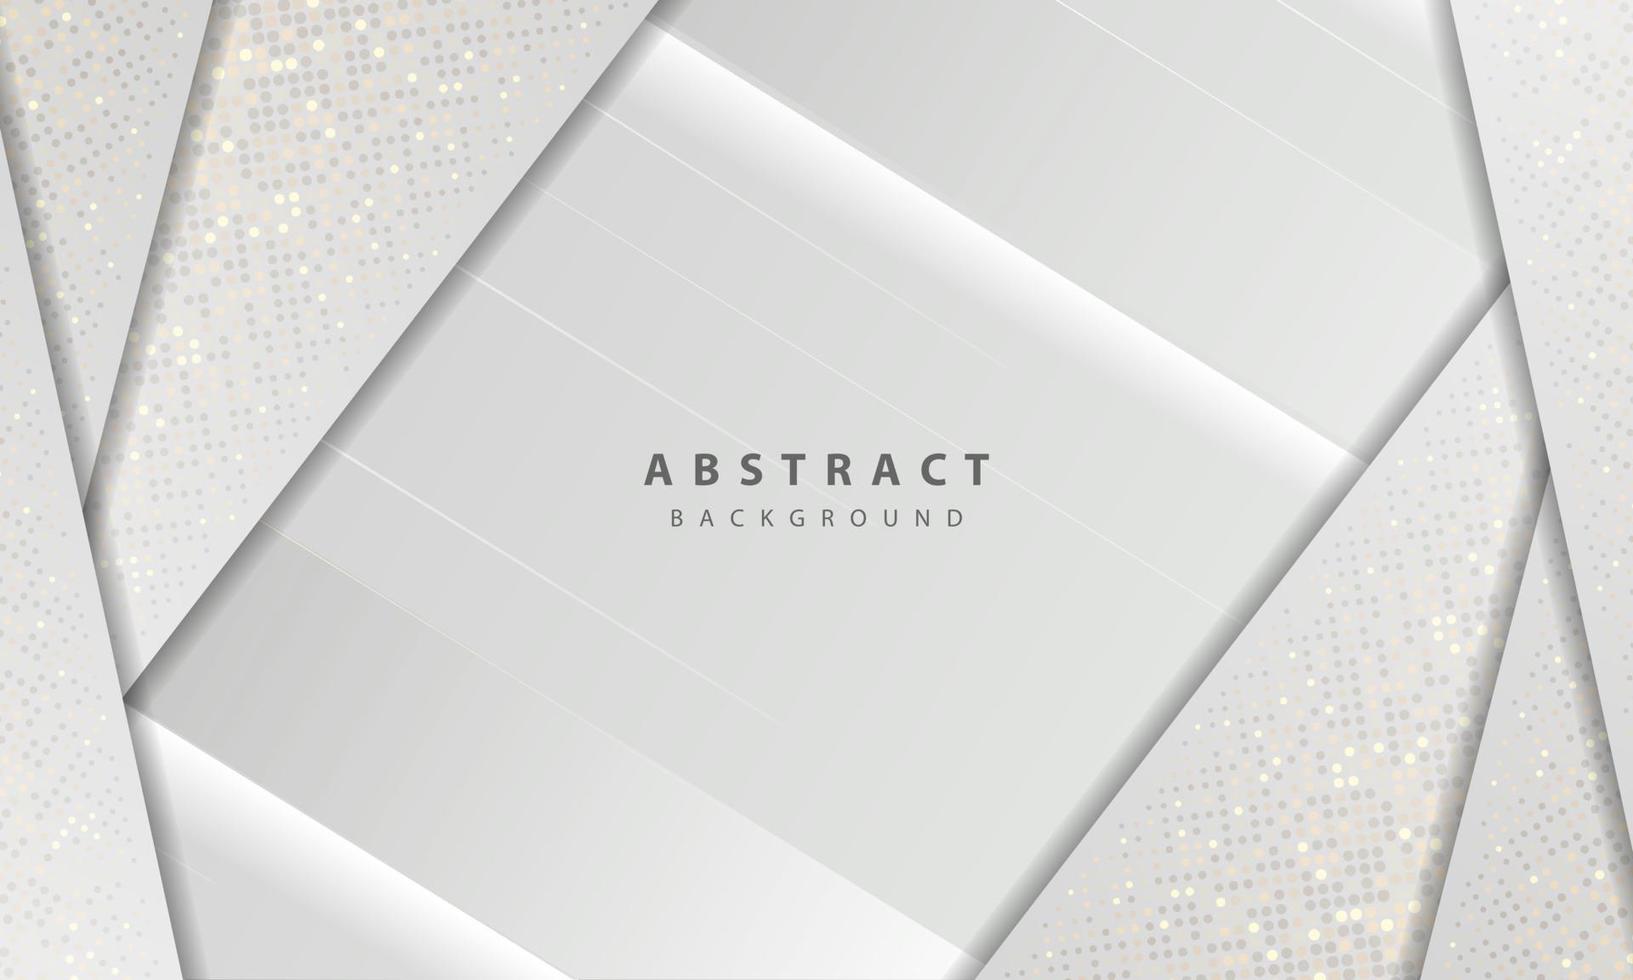 Textura de lujo y concepto moderno con decoración de elementos de puntos de brillos plateados. Fondo abstracto blanco con capas superpuestas de formas de papel. vector